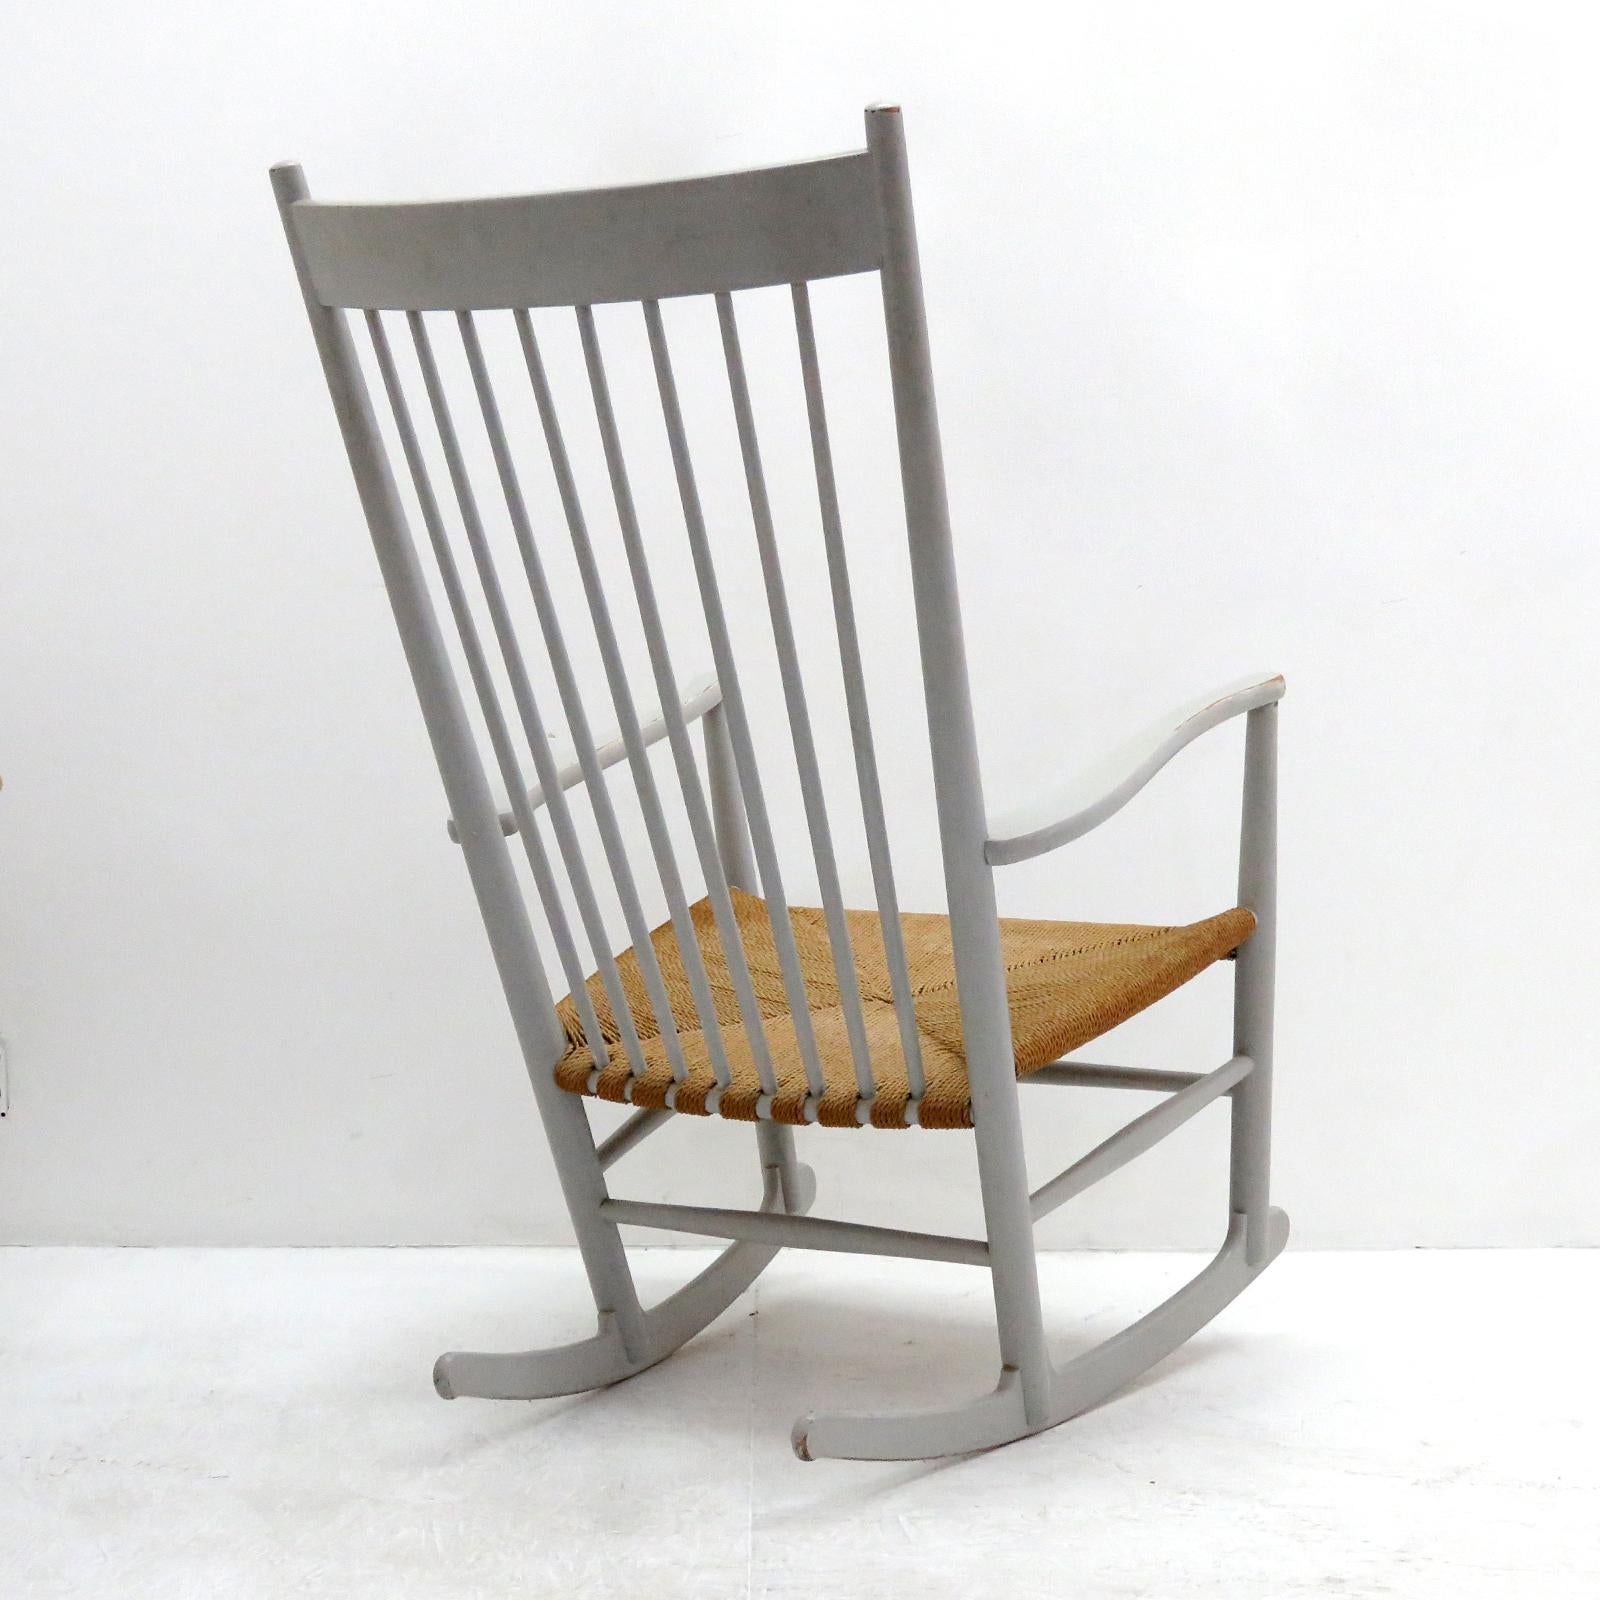 Danish Hans J. Wegner Model J16 Rocking Chair, 1961 For Sale